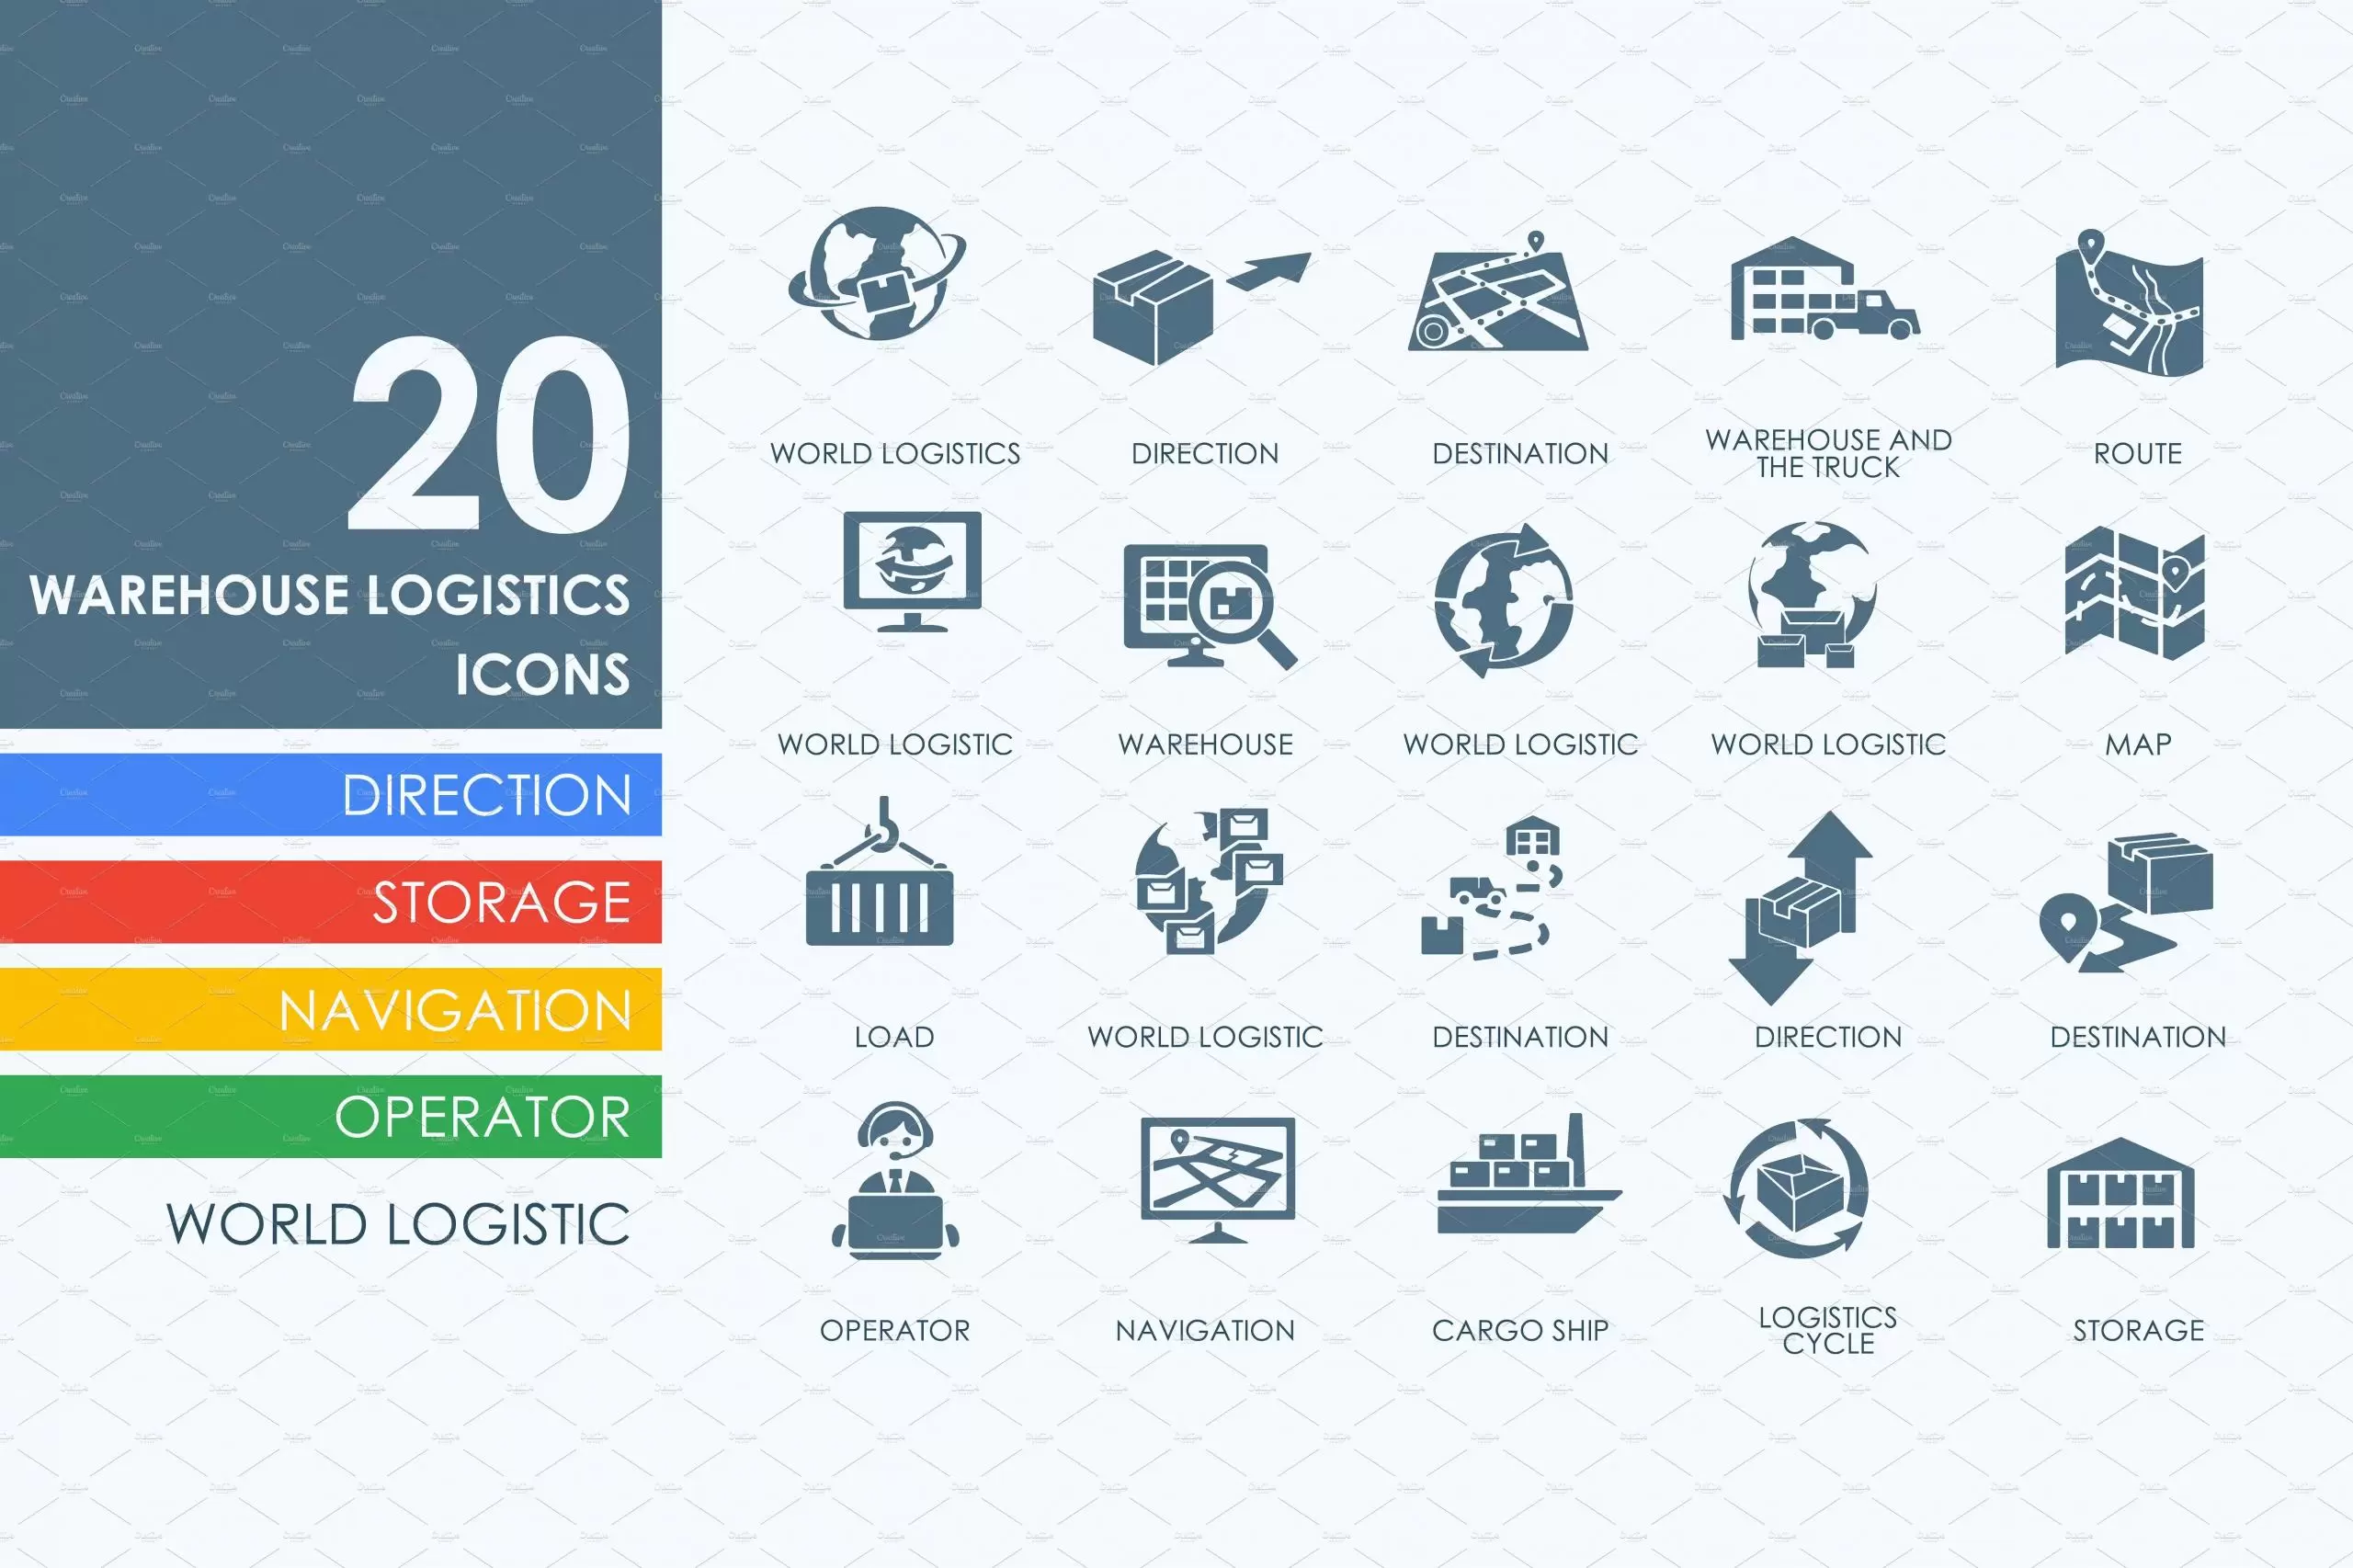 仓库物流图标素材 20 warehouse logistics icons插图